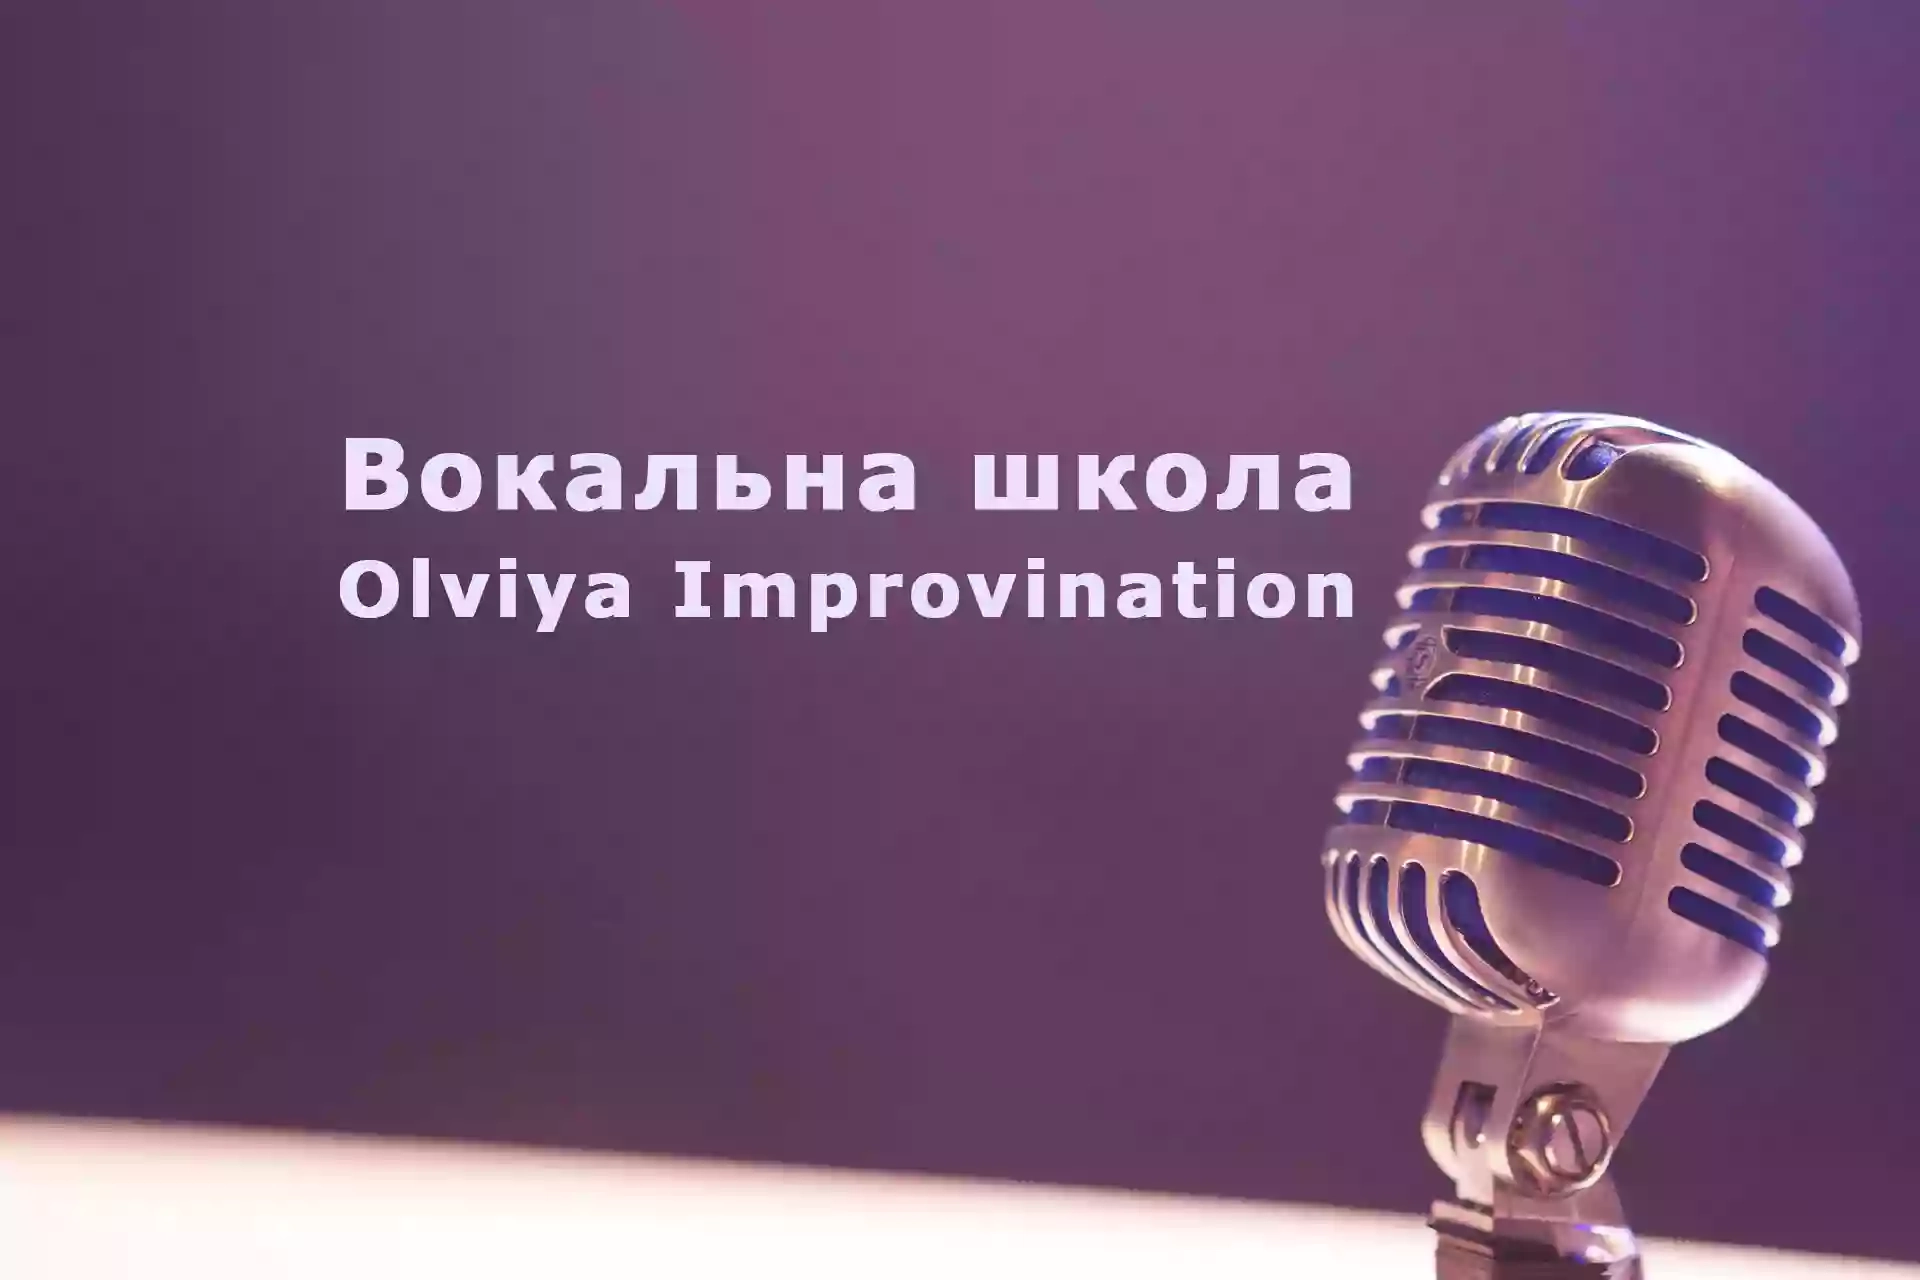 Вокальна школа "Olviya Improvination" (Ольвія Імпровінейшн)